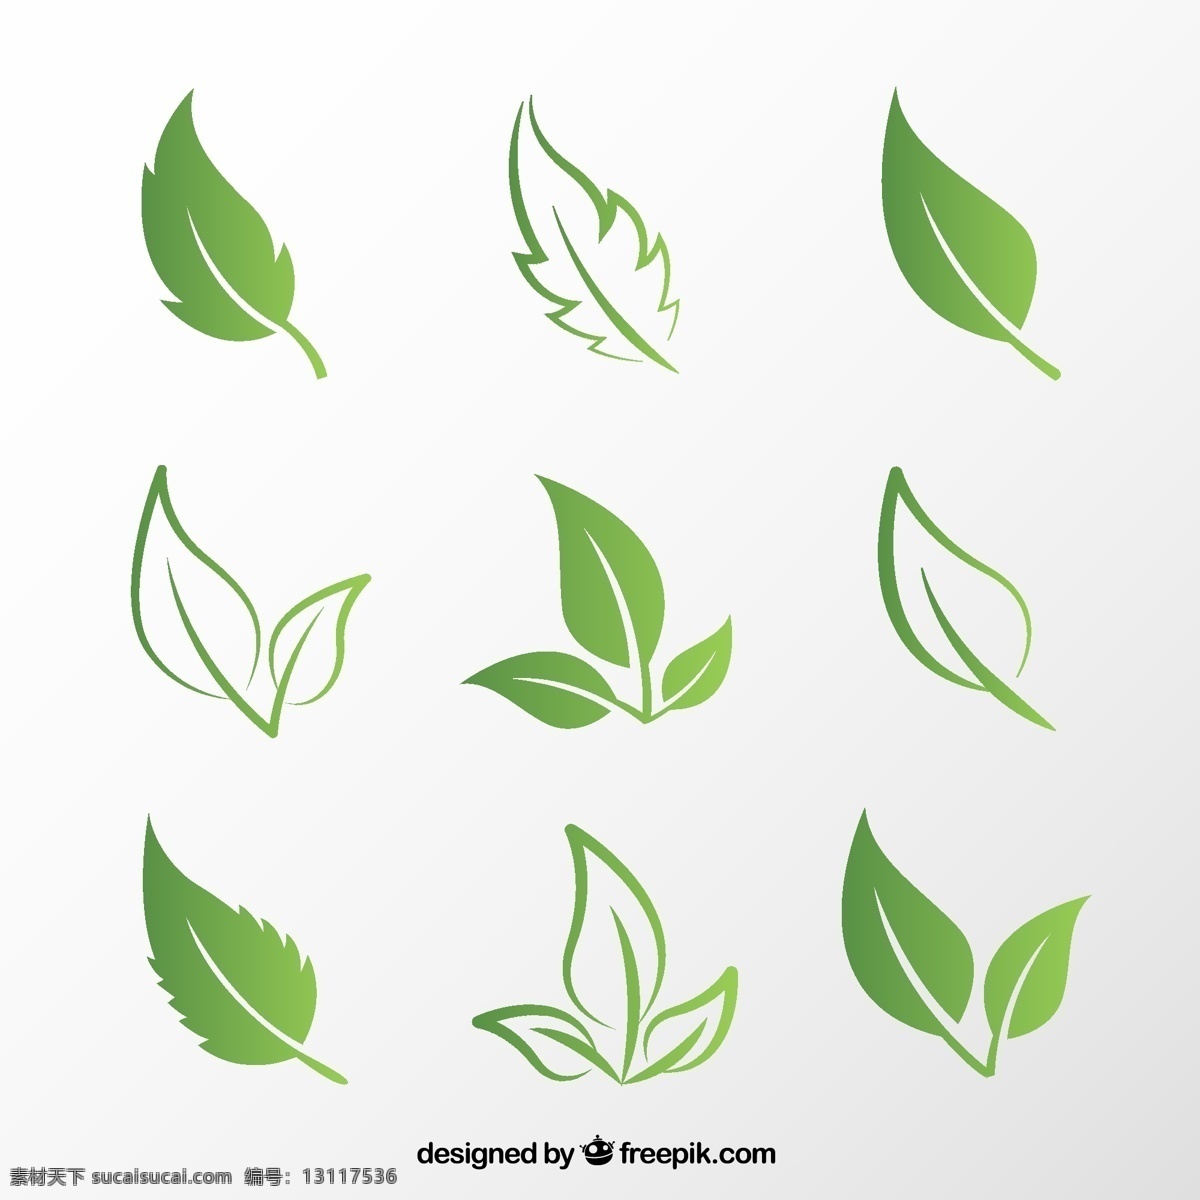 款 创意 绿叶 矢量 绿叶设计 矢量素材下载 植物 树叶 叶子 矢量图 ai格式 标志图标 其他图标 白色